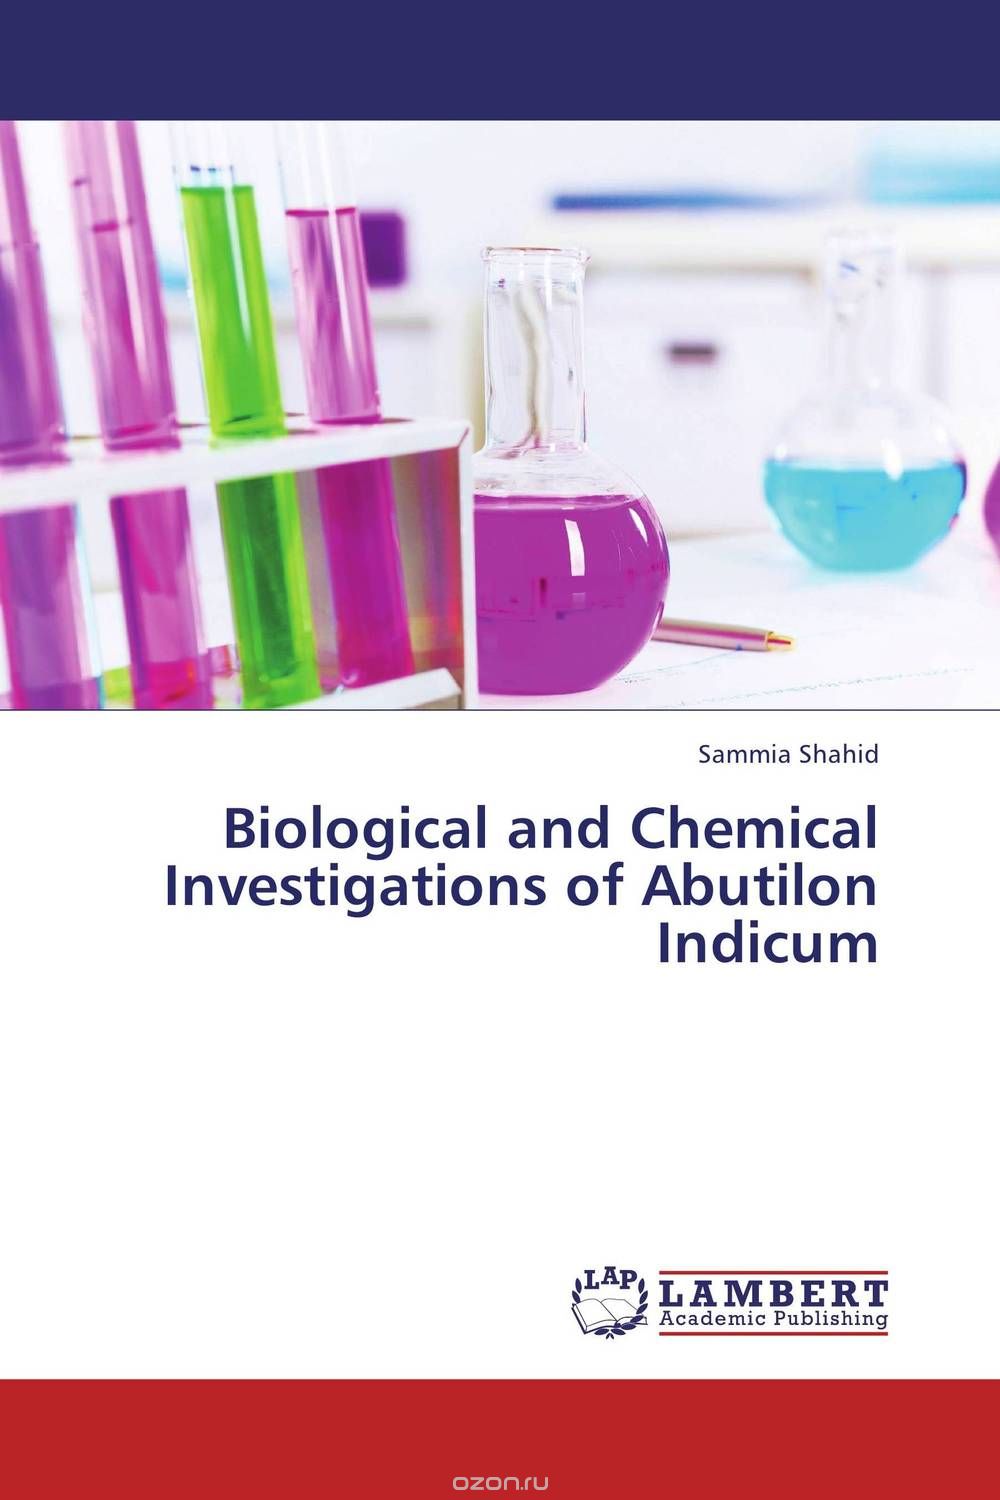 Скачать книгу "Biological and Chemical Investigations of Abutilon Indicum"